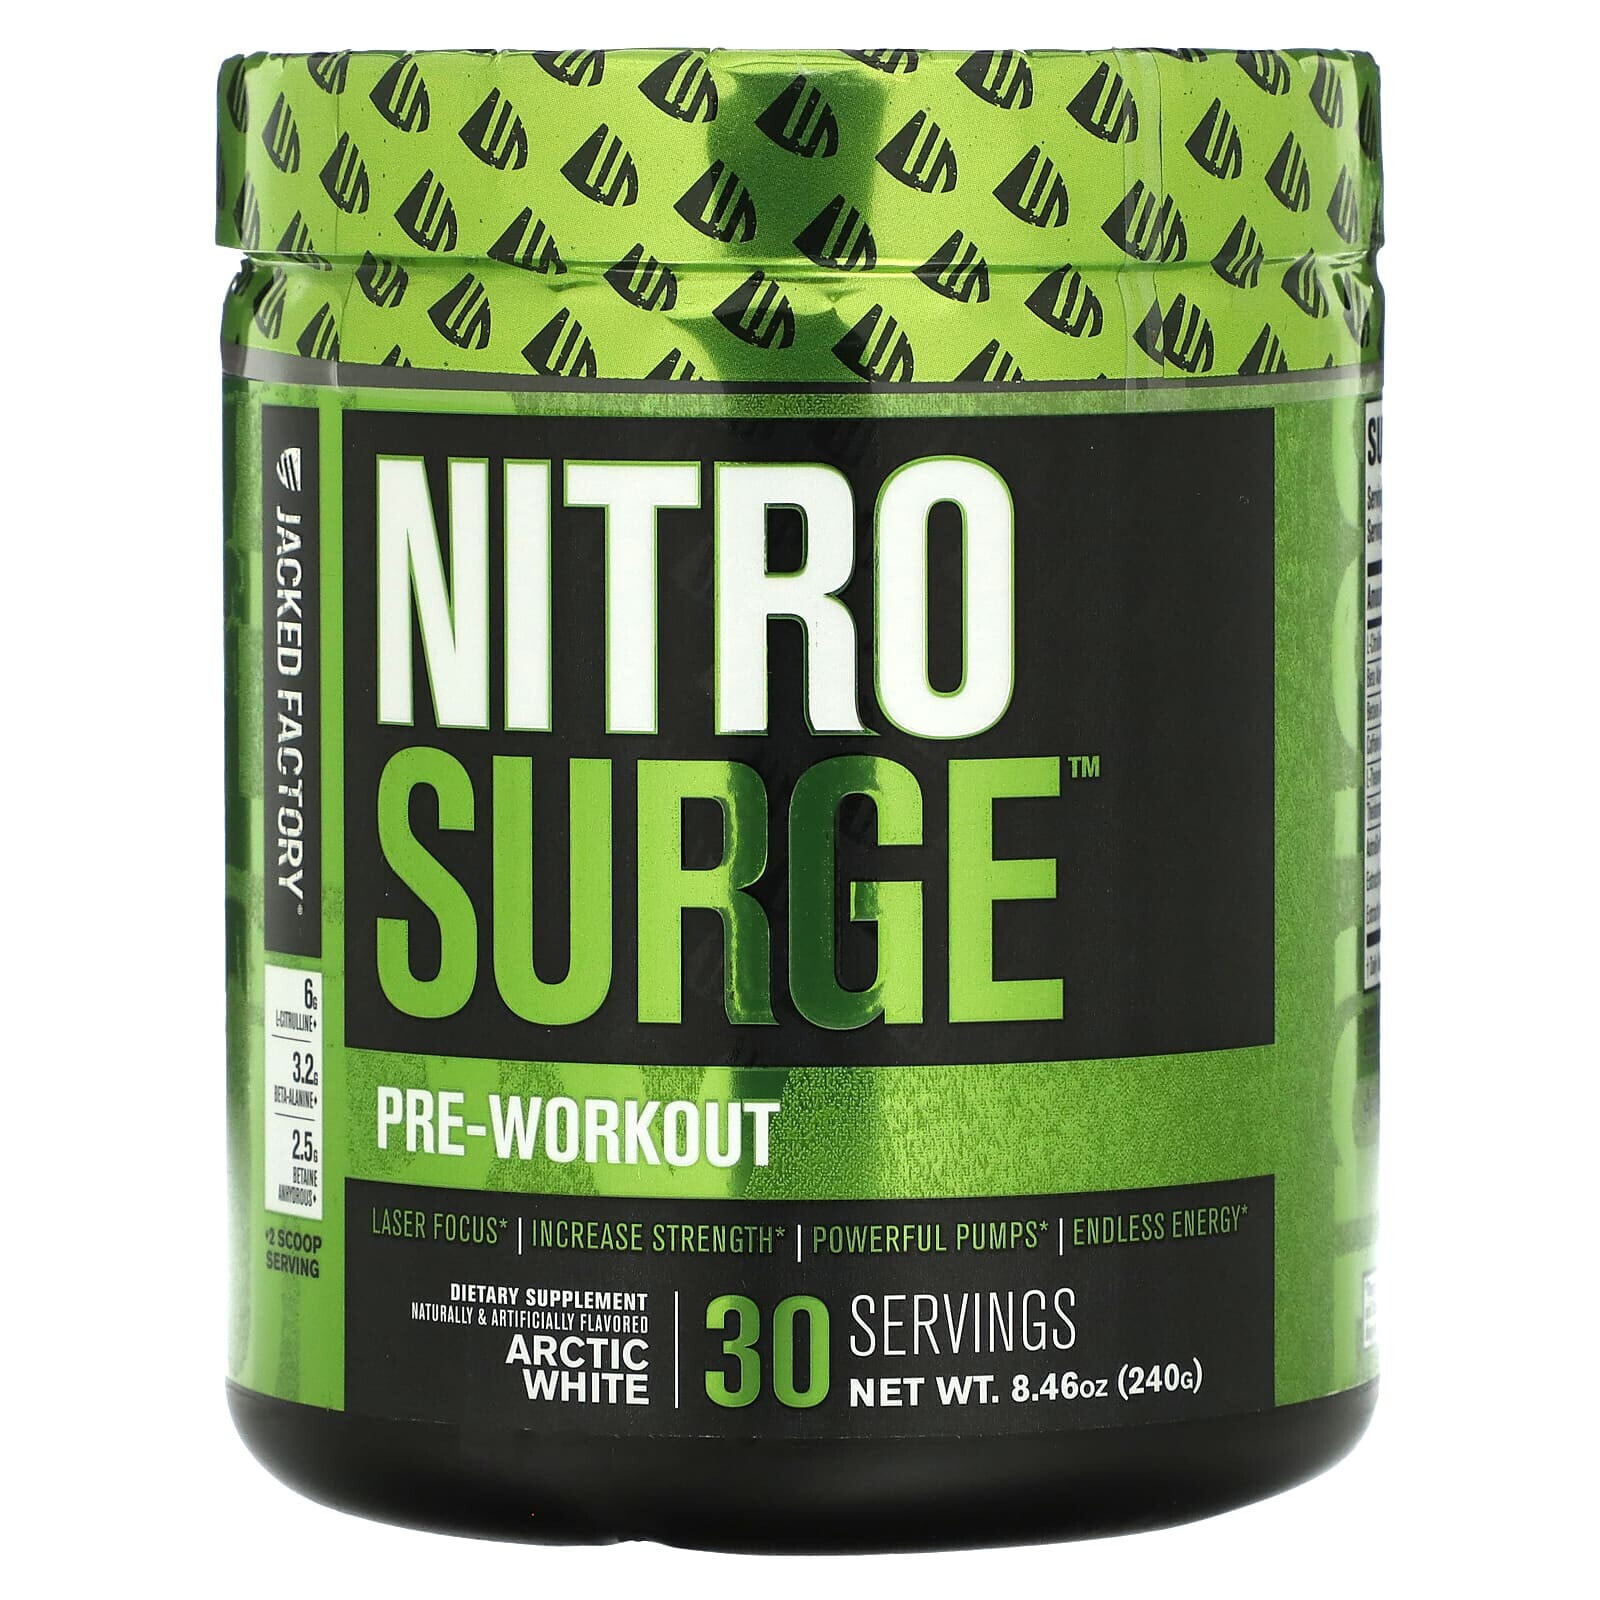 Nitro Surge, Pre-Workout, Grape, 8.78 oz (249 g)